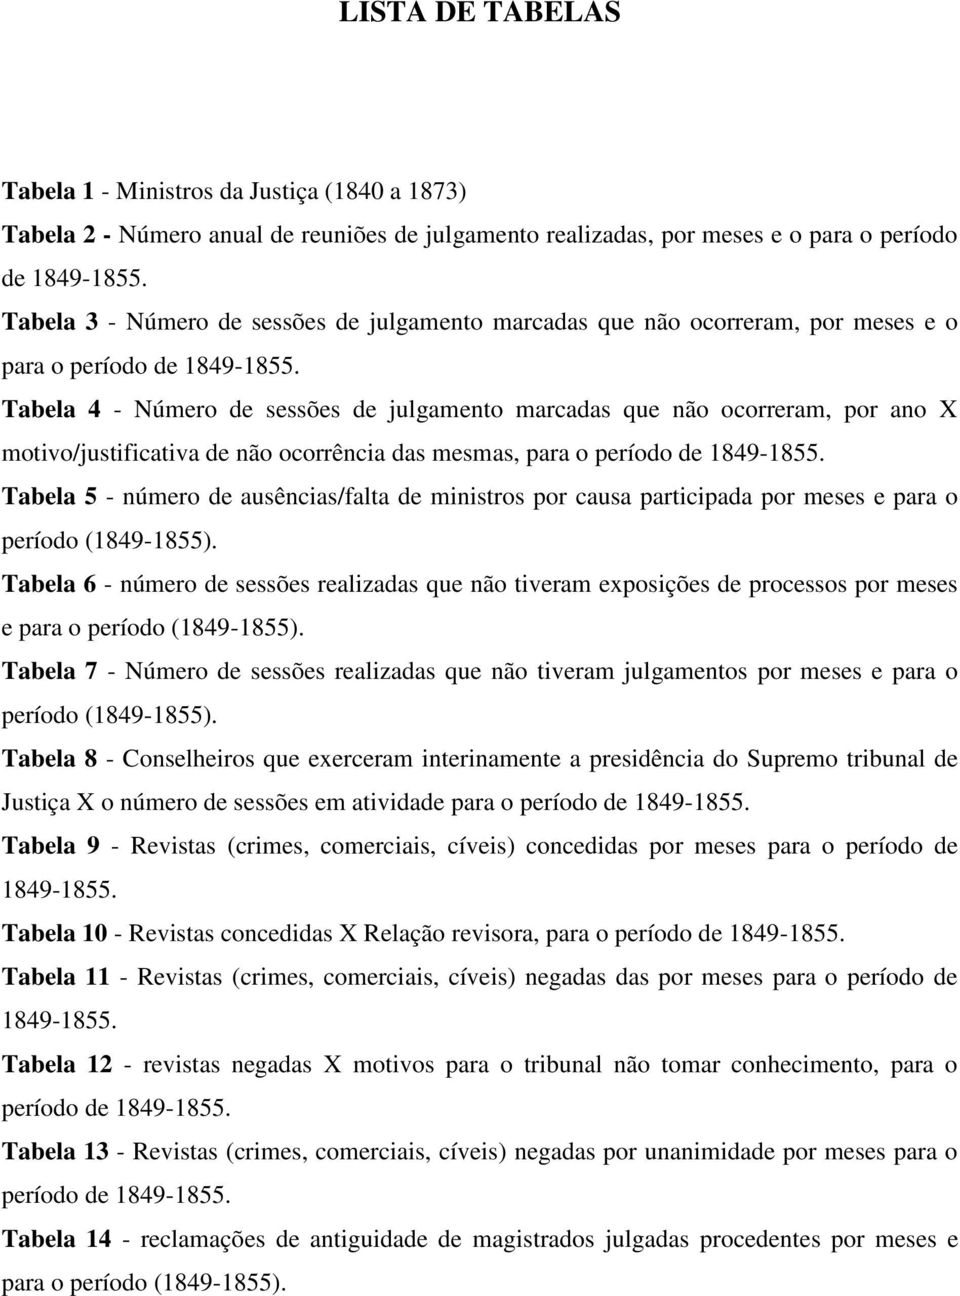 Tabela 4 - Número de sessões de julgamento marcadas que não ocorreram, por ano X motivo/justificativa de não ocorrência das mesmas, para o período de 1849-1855.